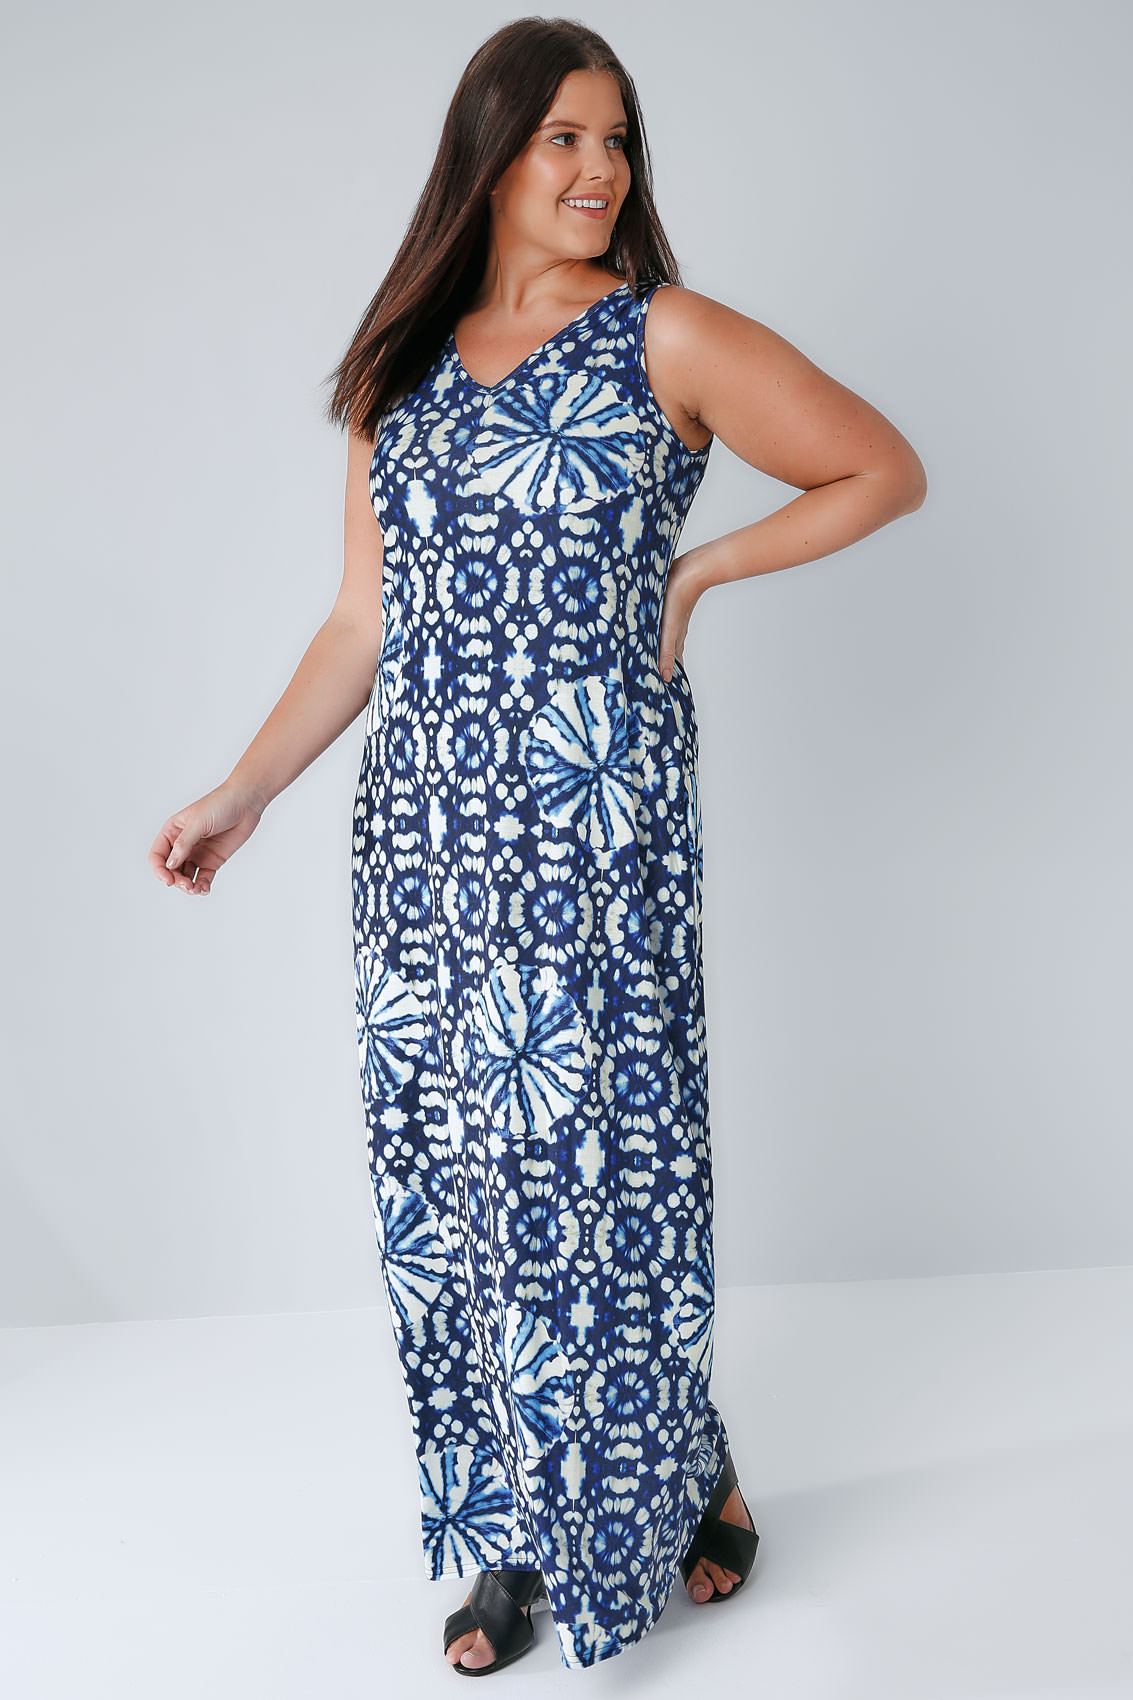 Blue & White Circle Tie Dye Print Jersey Maxi Dress With V-Neck plus